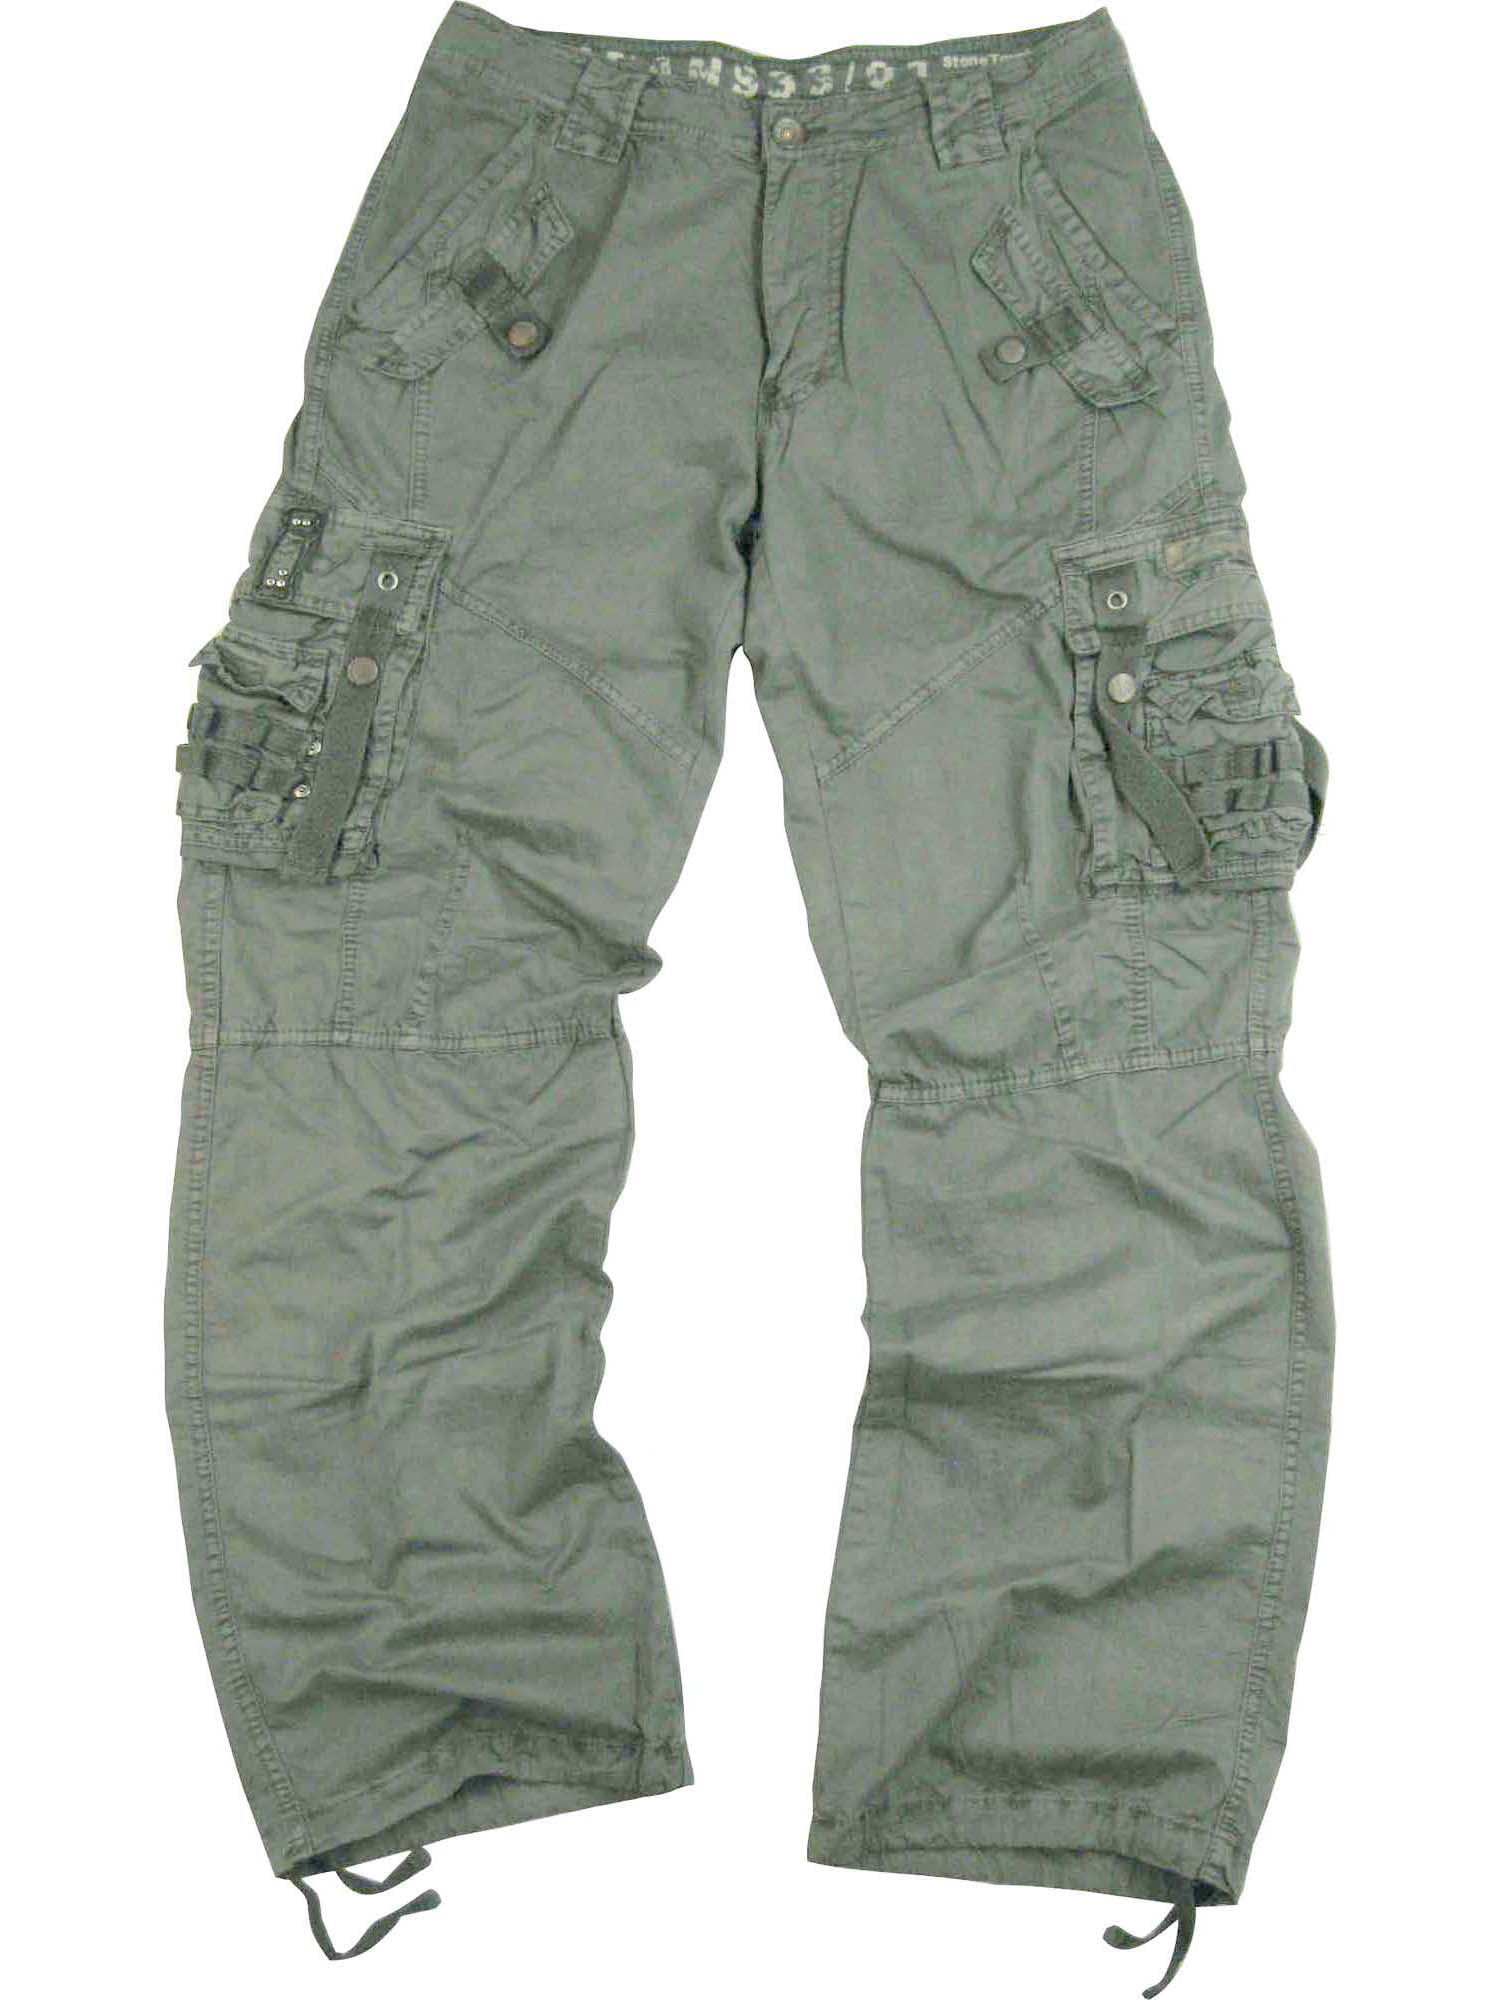 Men's Military Cargo Pants 32x34 L.Grey #12211 - Walmart.com